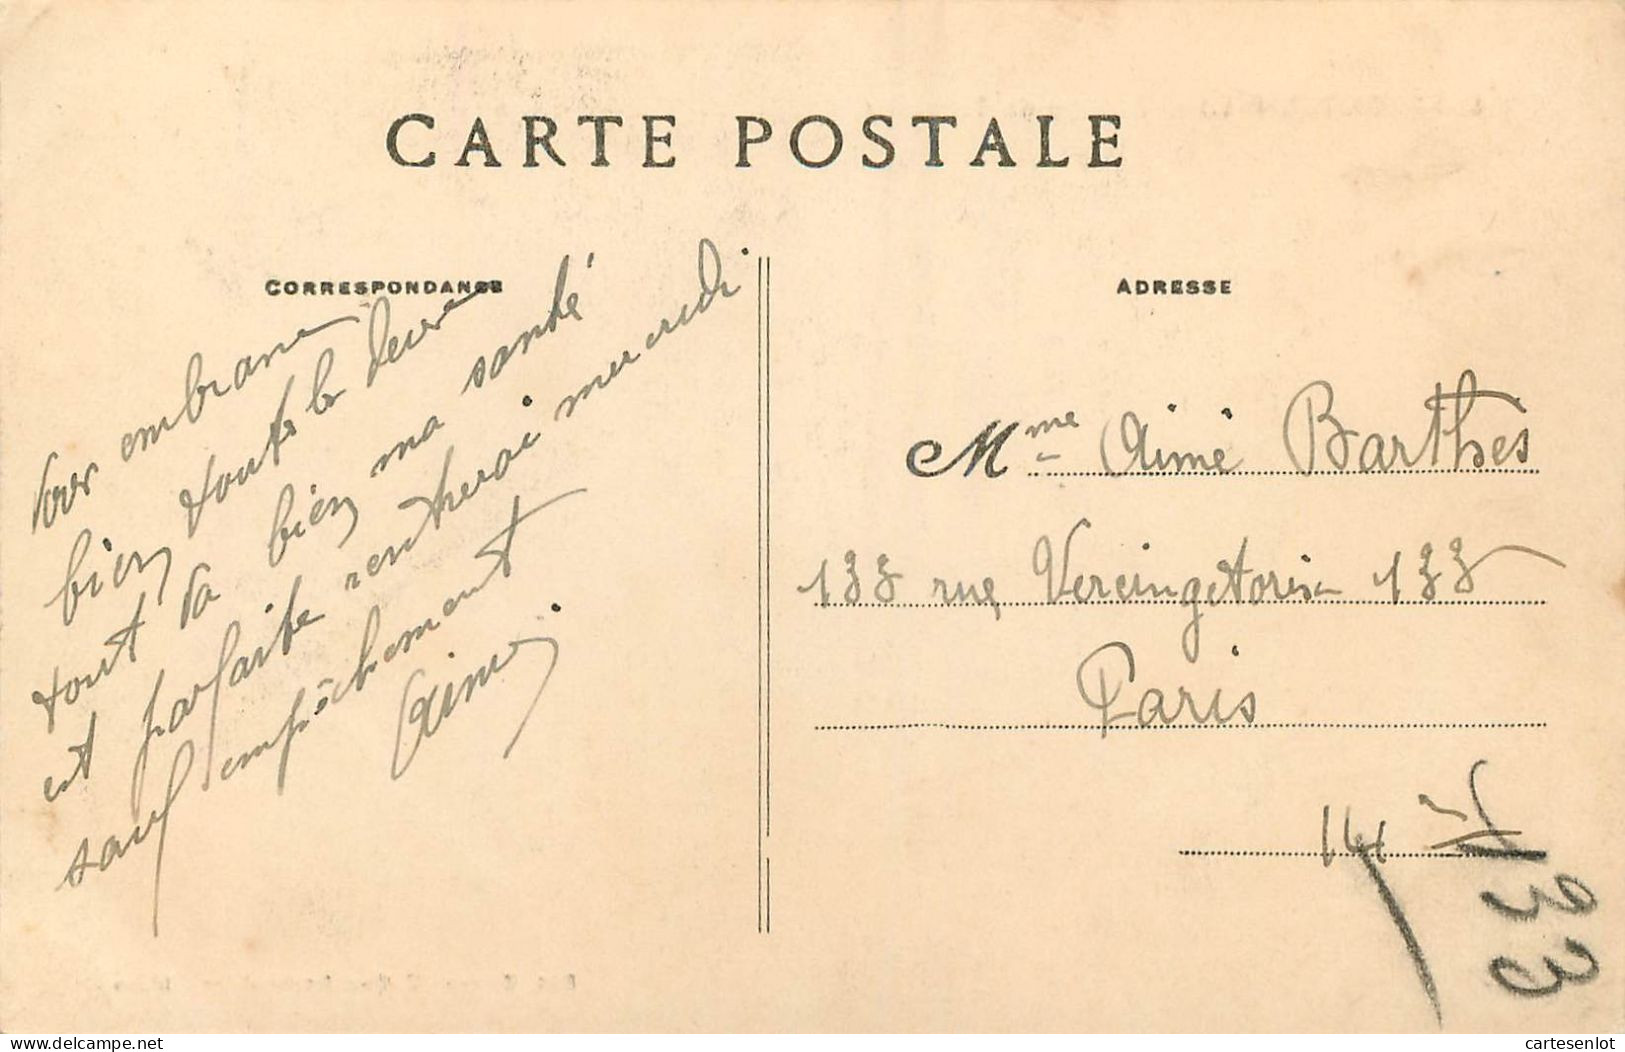 lot de 31 cartes postale France correspondance même famille